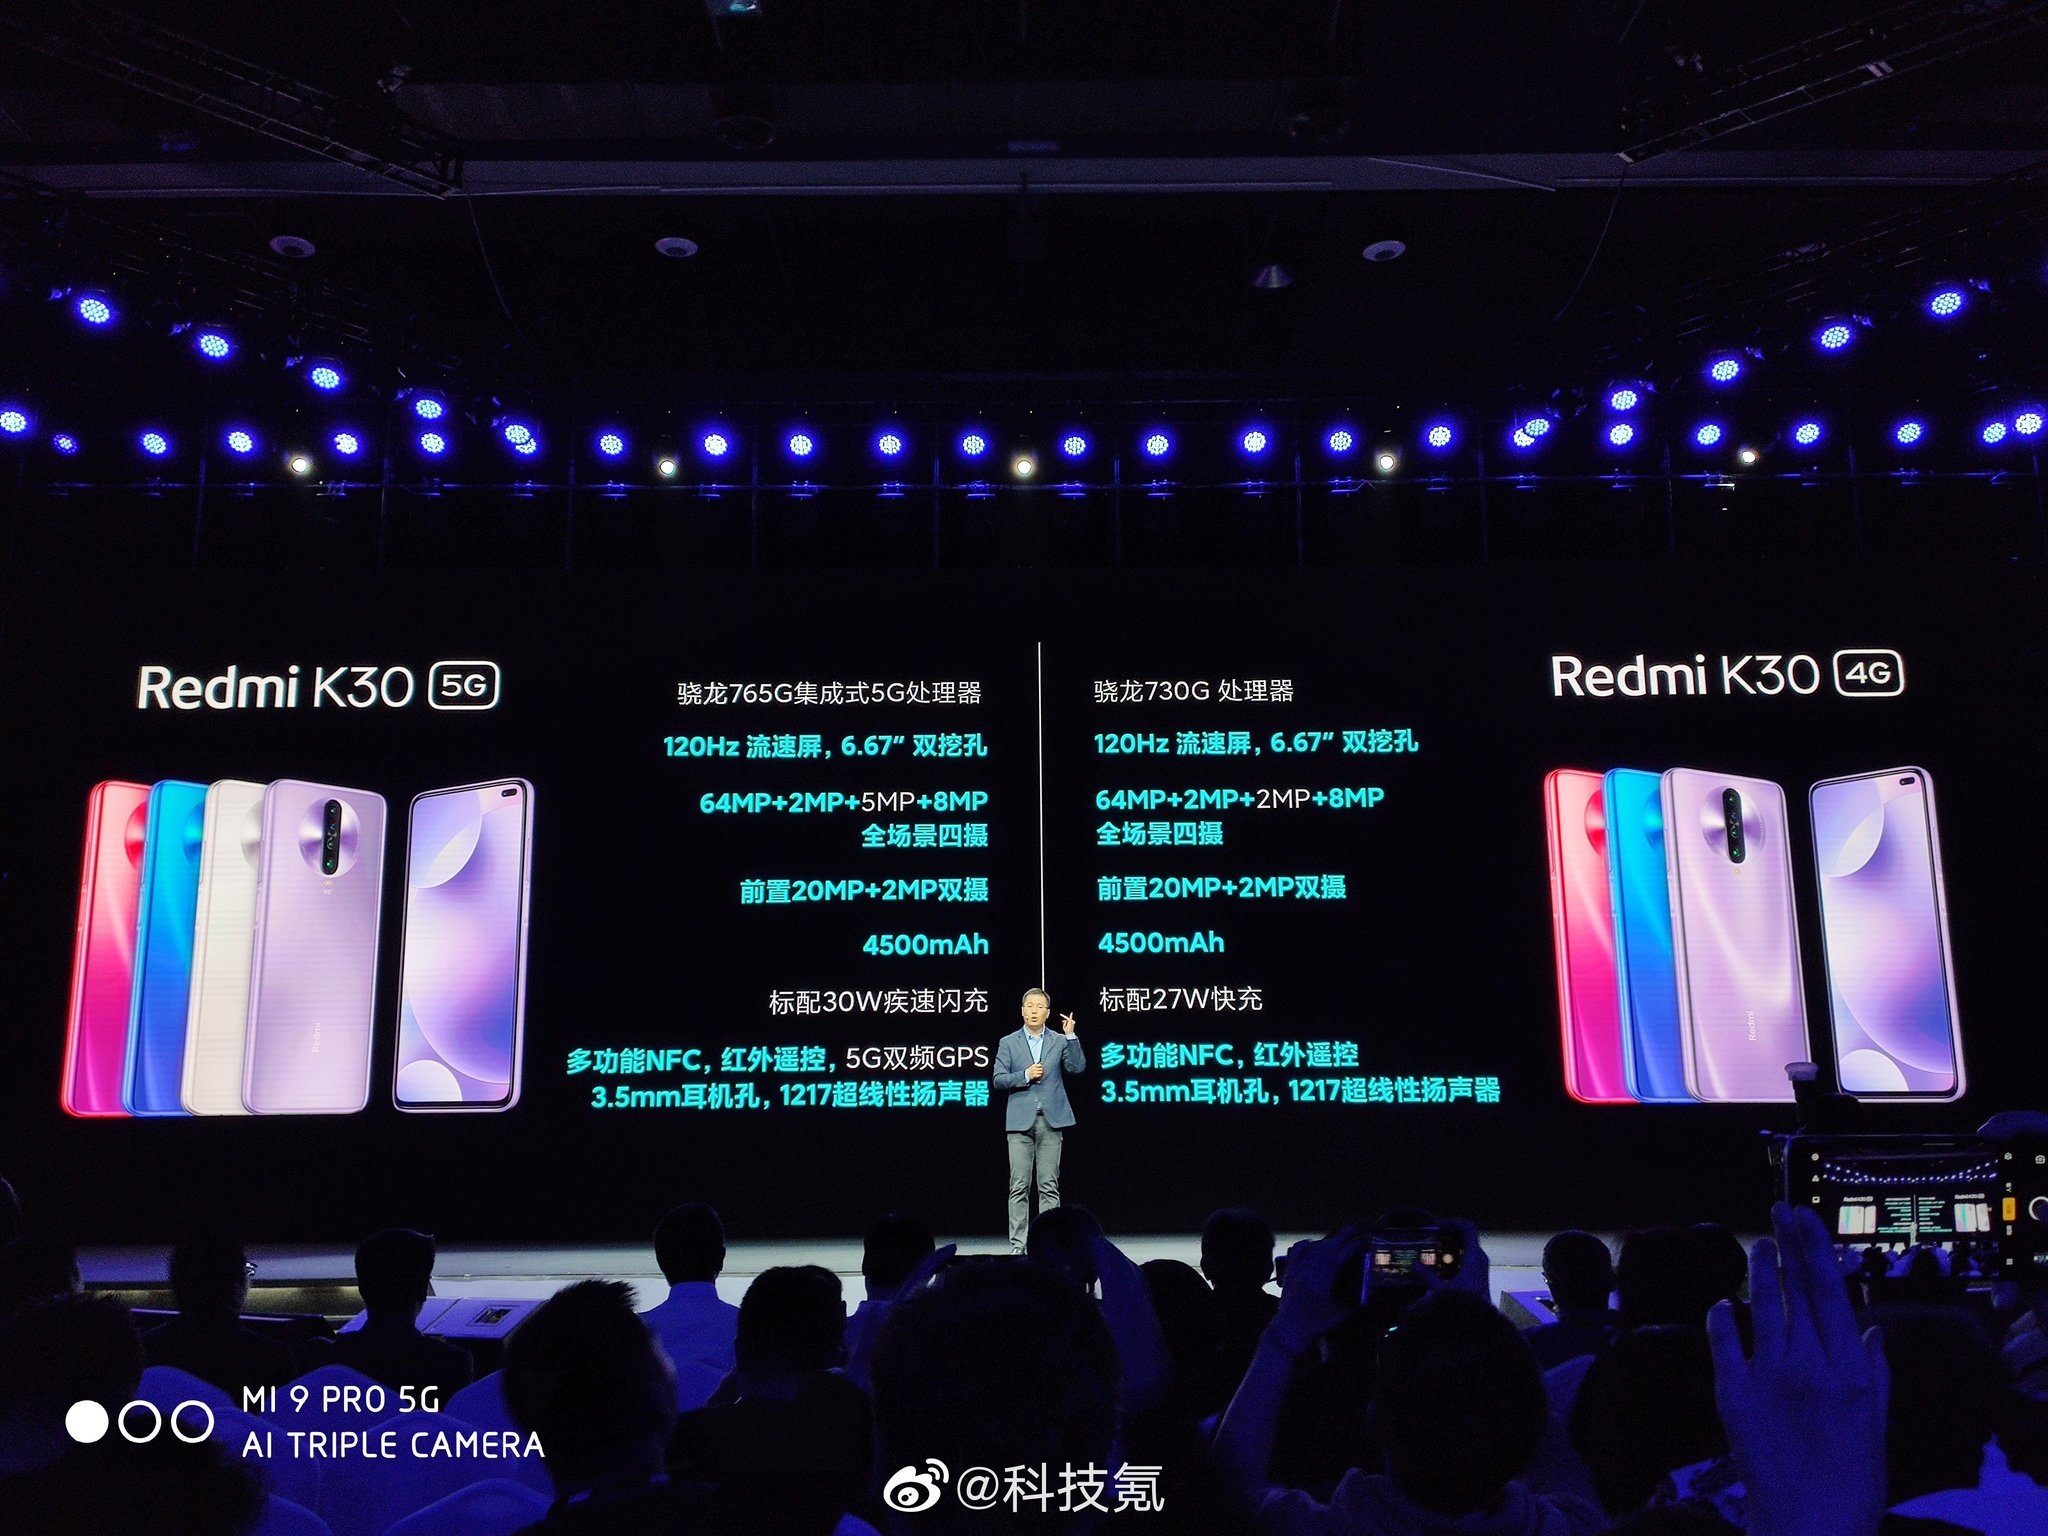 En ucuz 5G telefonu Redmi K30 tanıtıldı